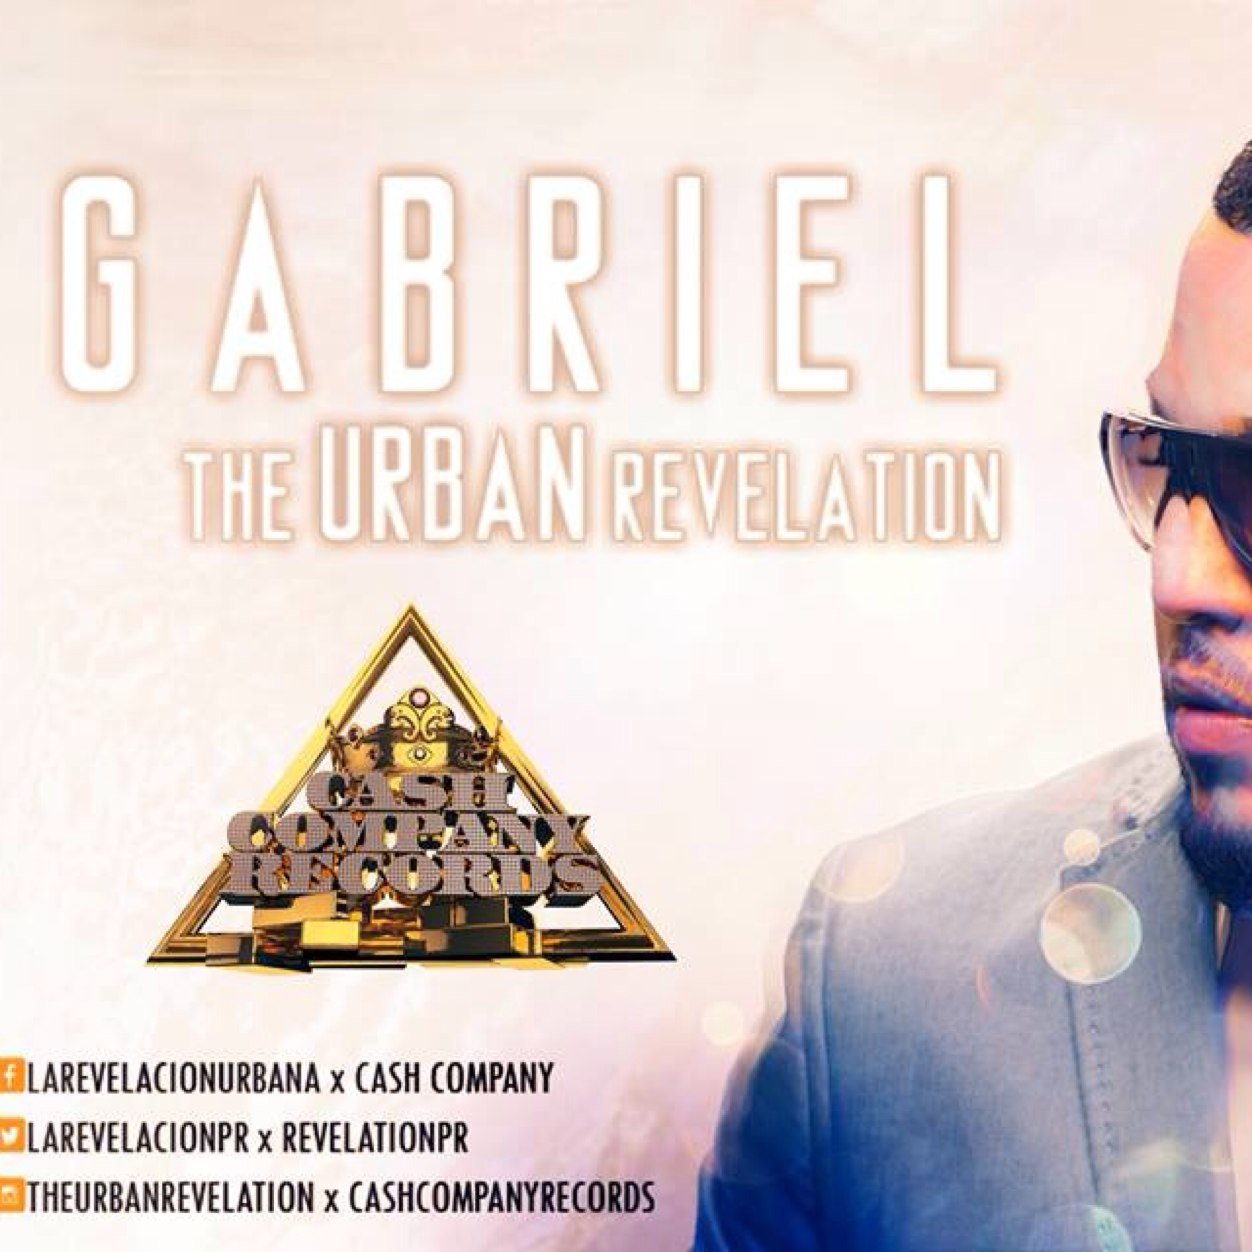 Gabriel The Urban Revelation  
Contact:
gabriellarevelacionurbana@gmail.com